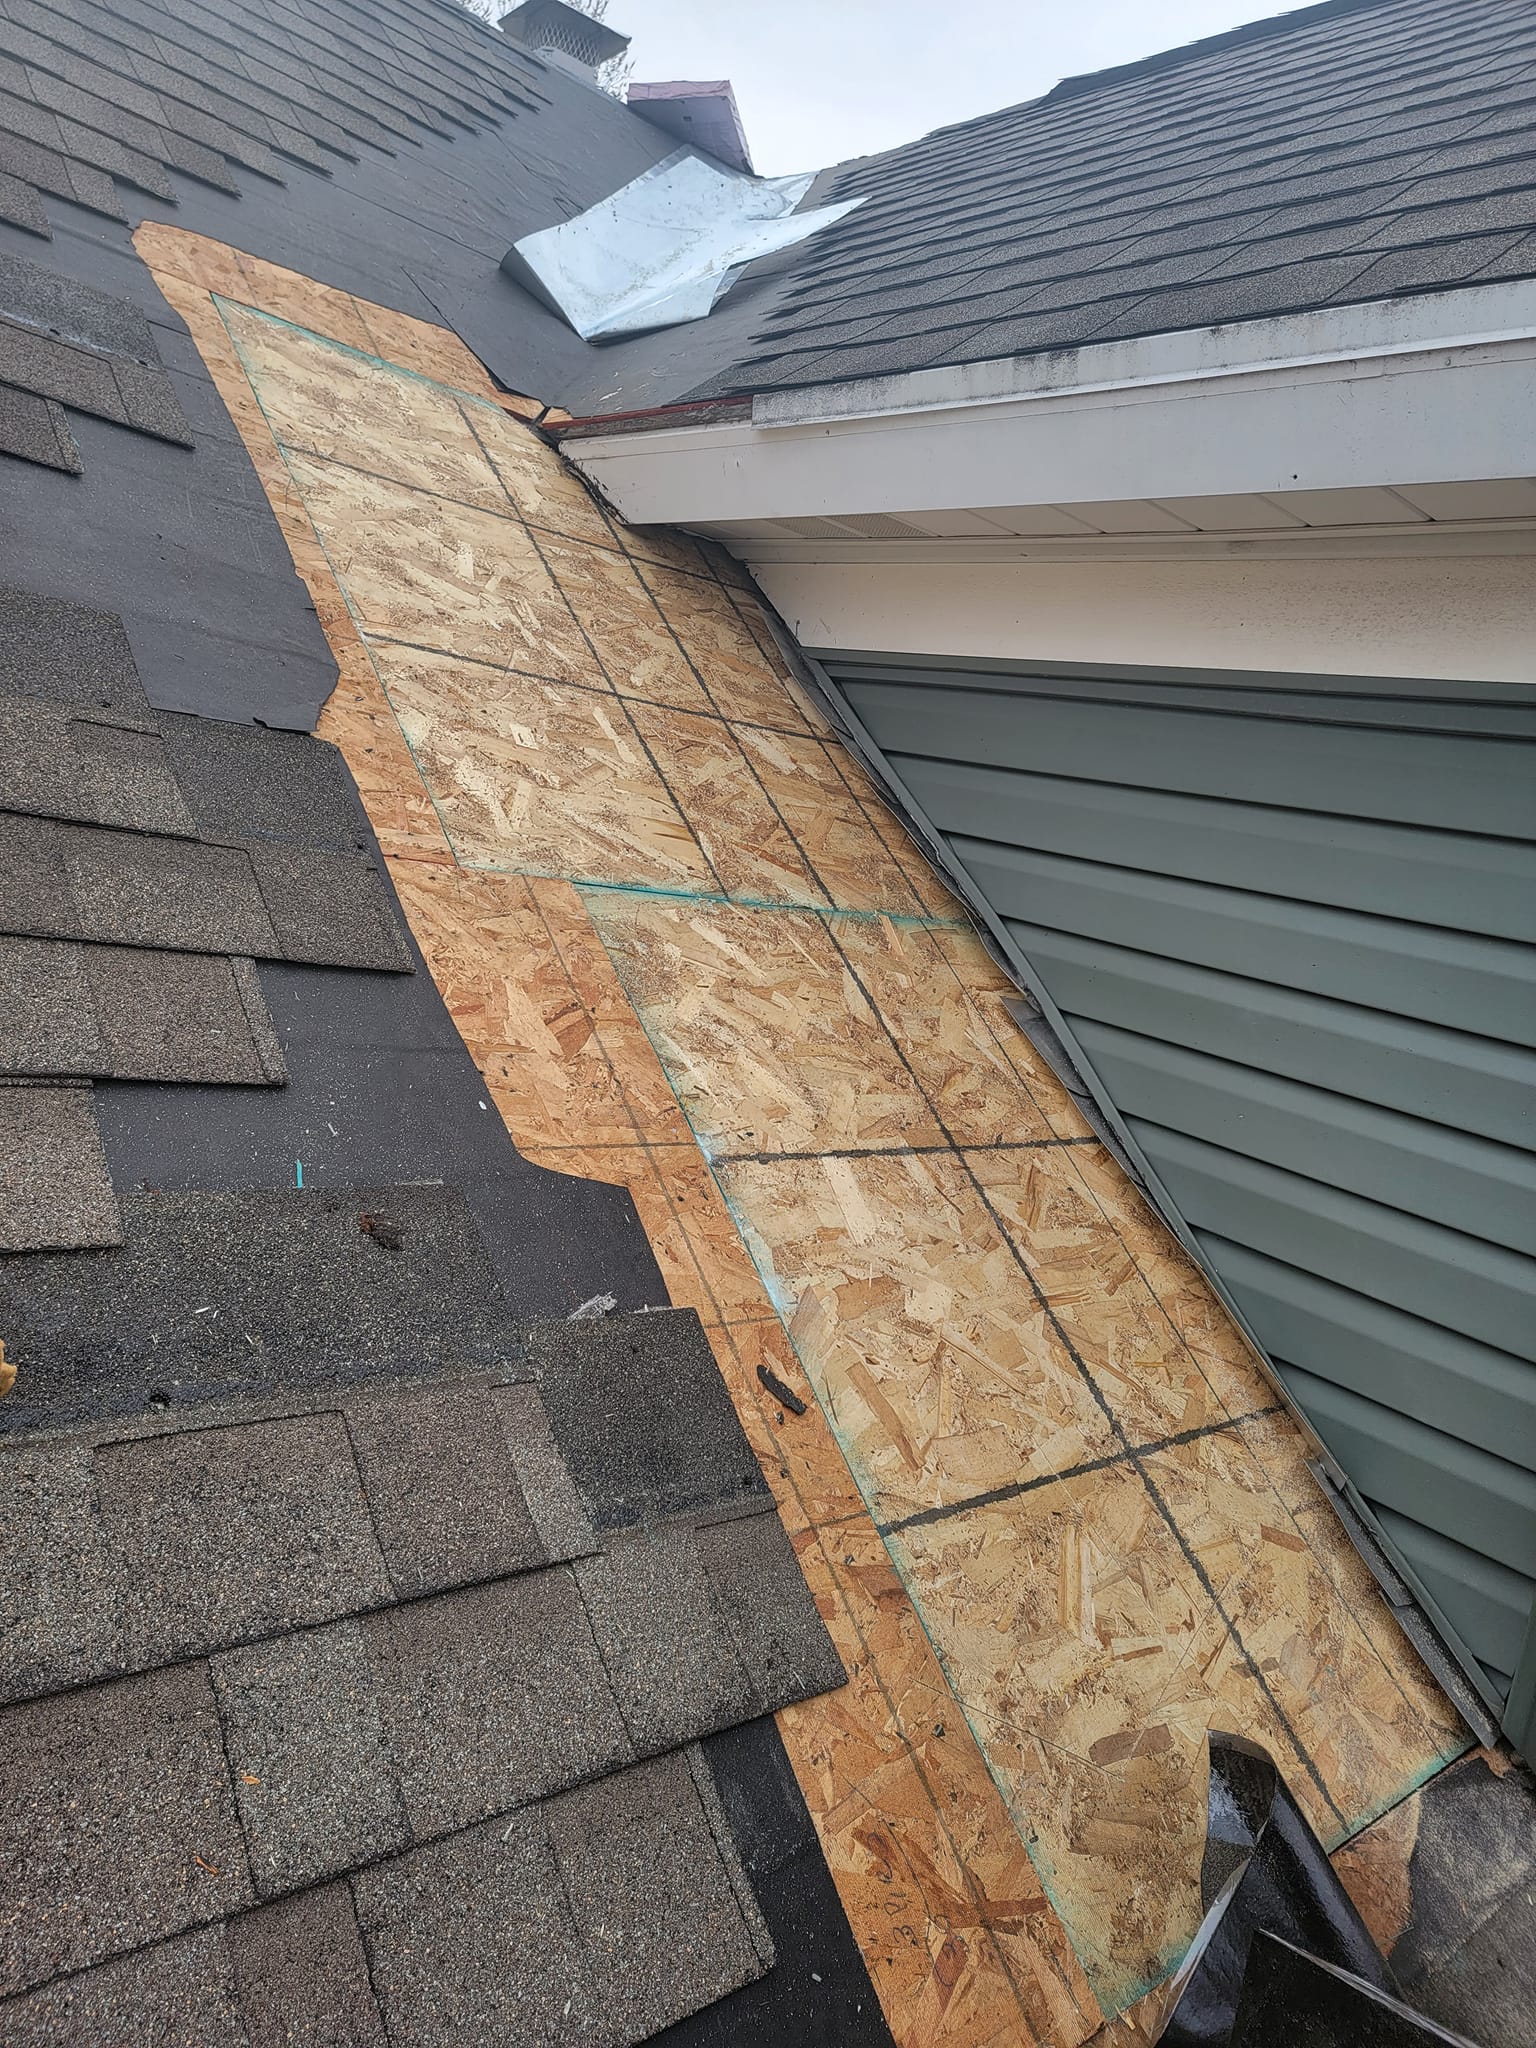 Roof repair wood replacement